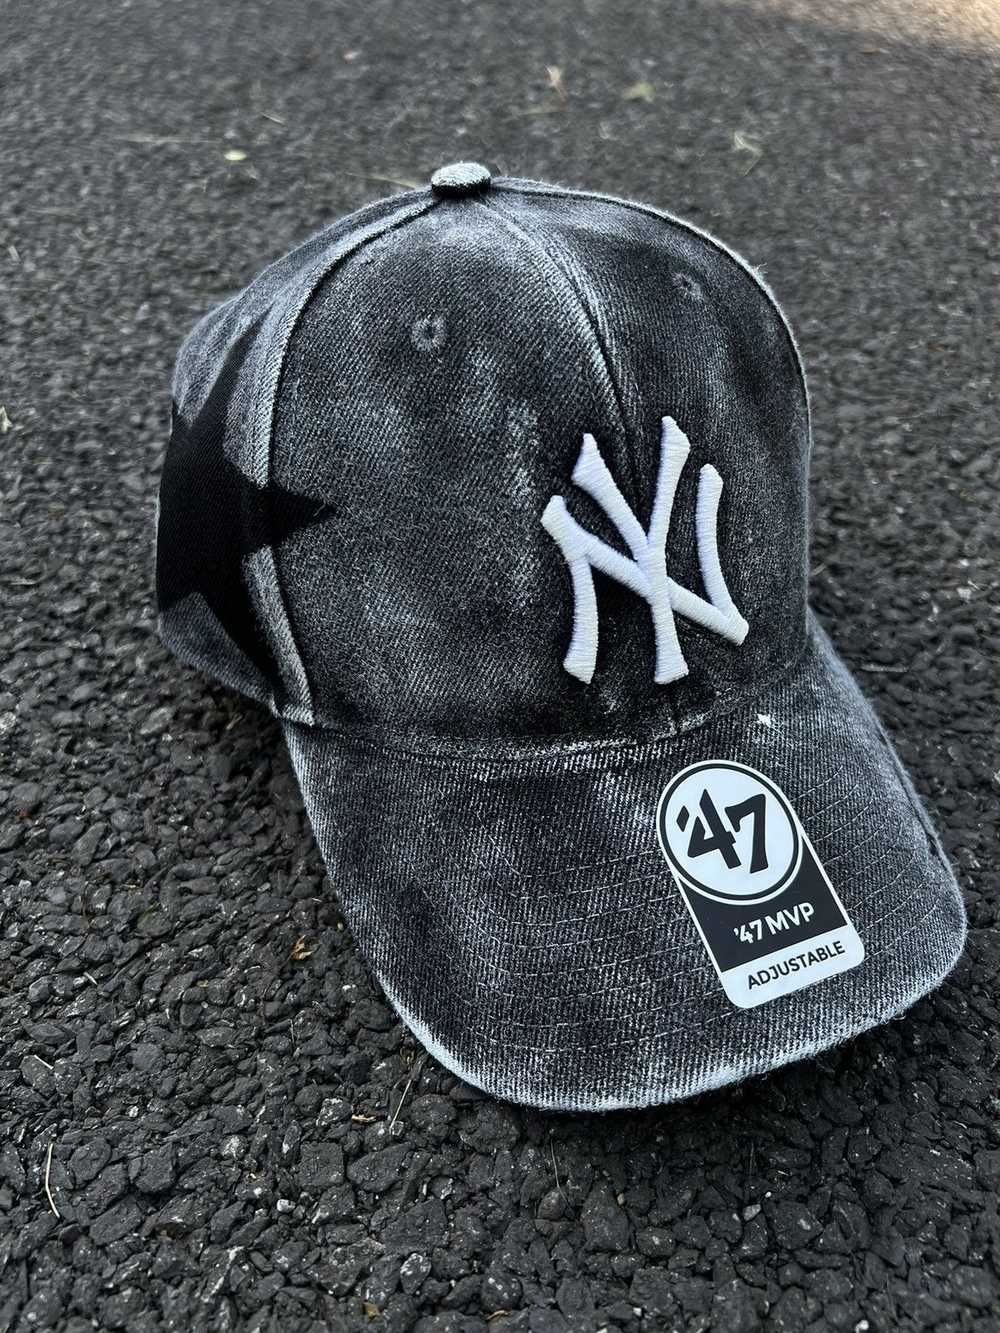 Maison Margiela × New Era × New York Yankees Cust… - image 2